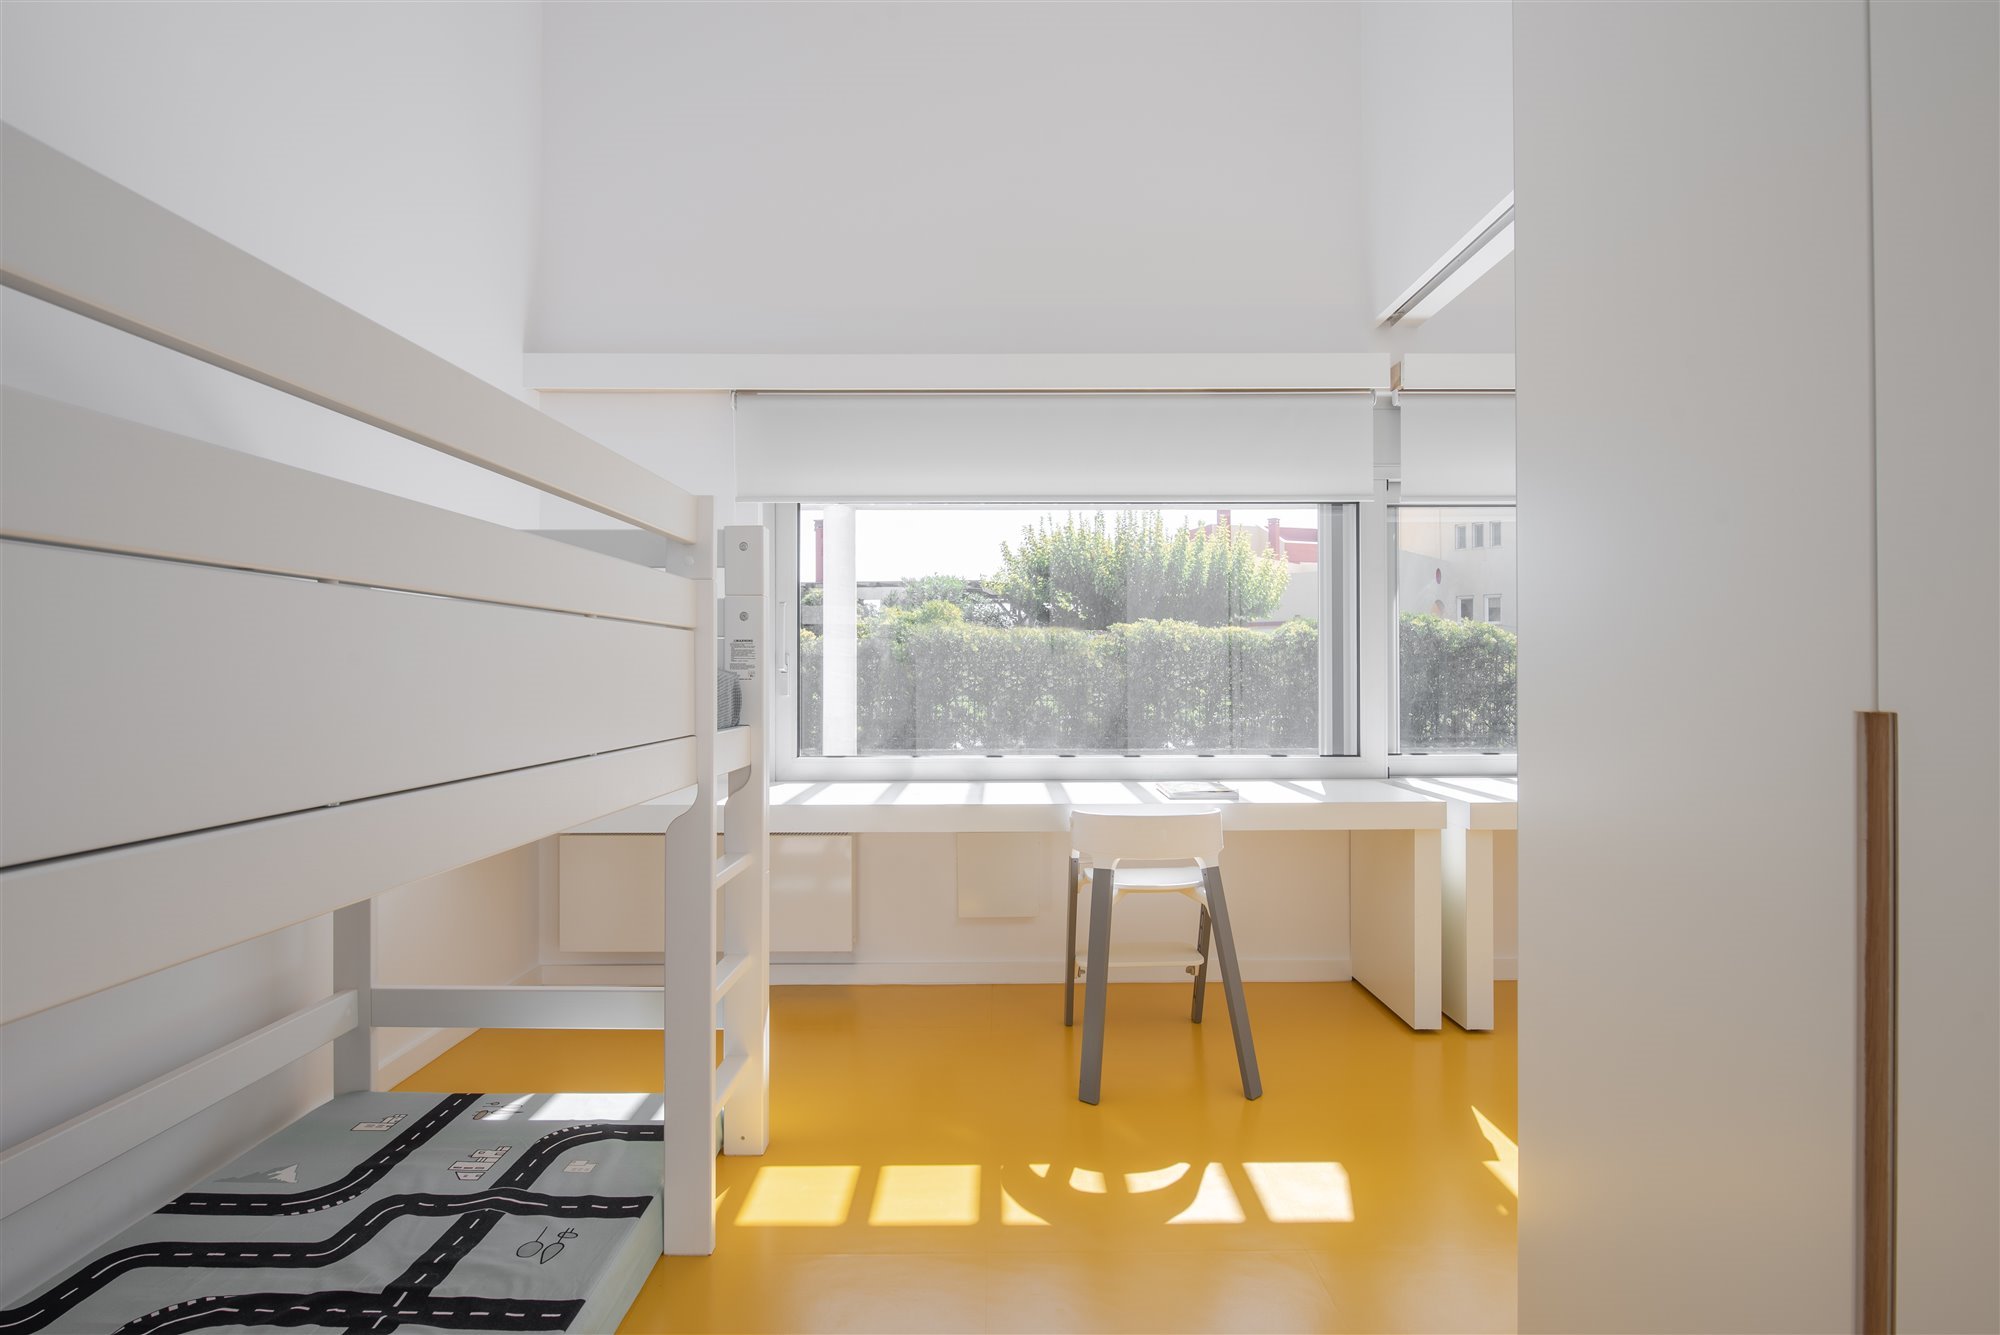 Dormitorio con suelos de color amarillo de una casa moderna